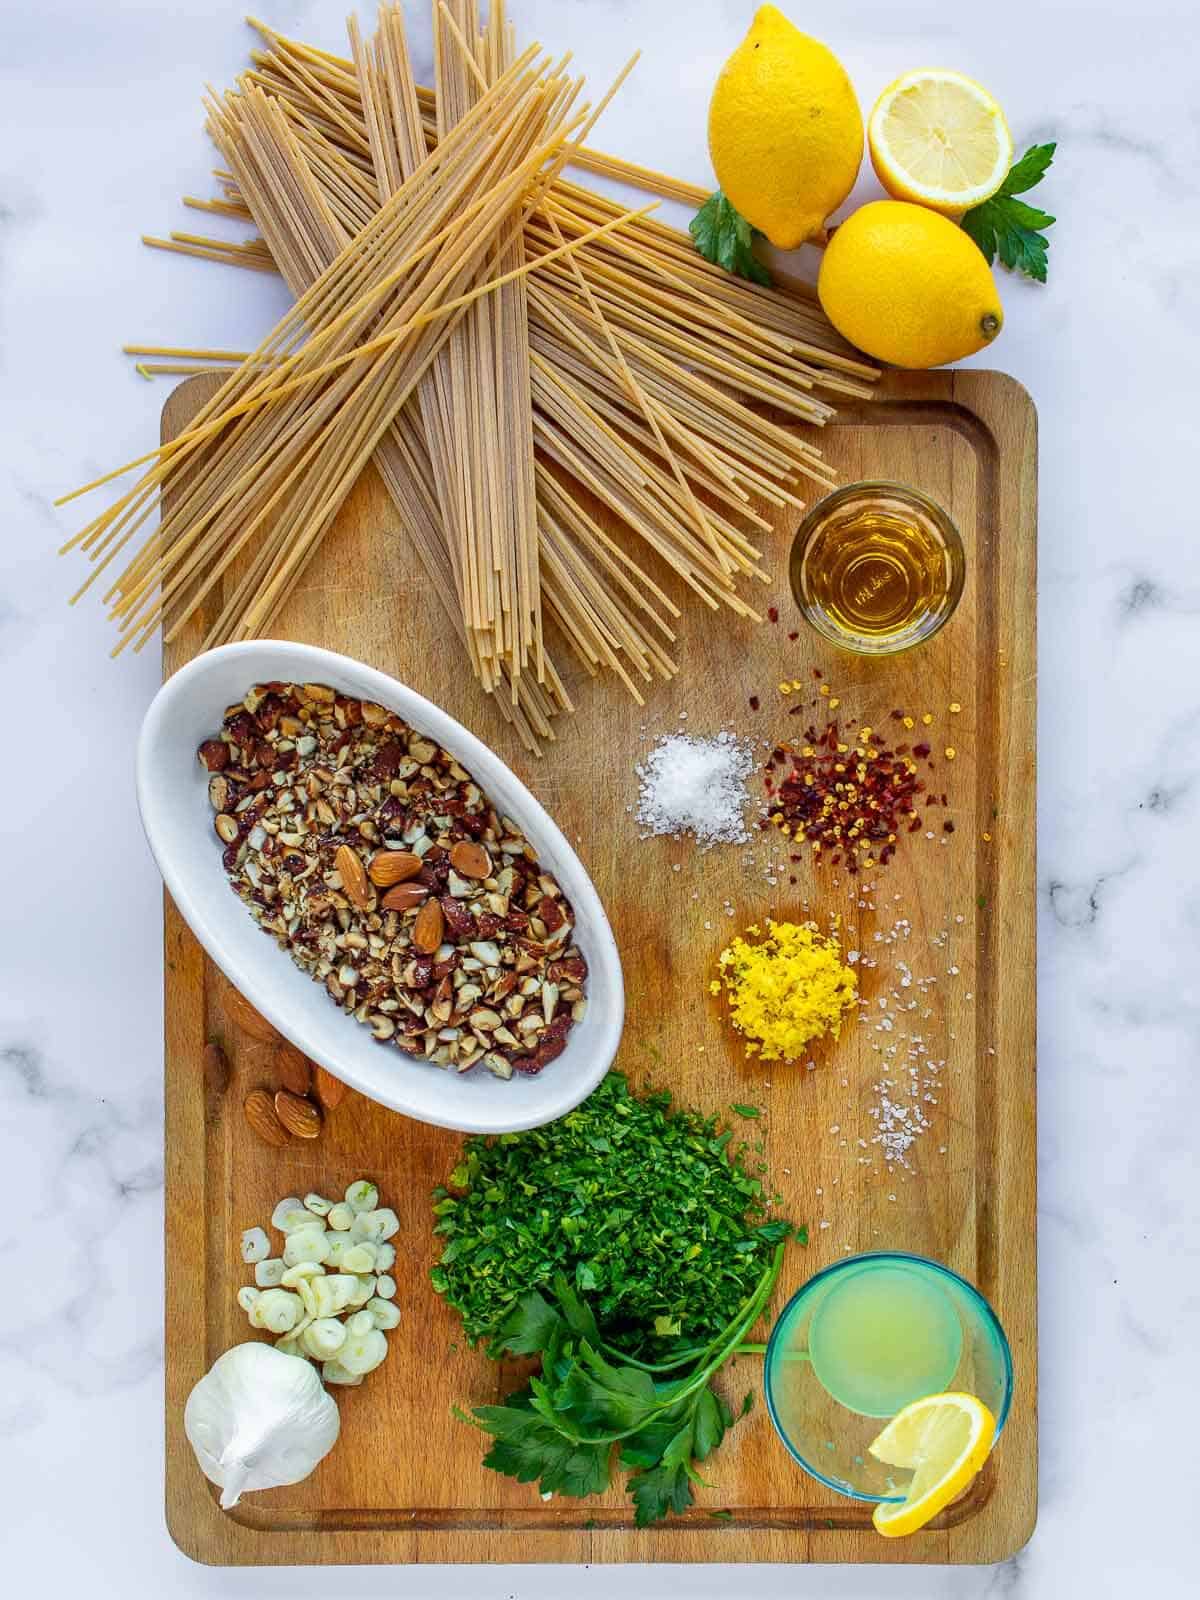 Lemony Spaghetti Ingredients